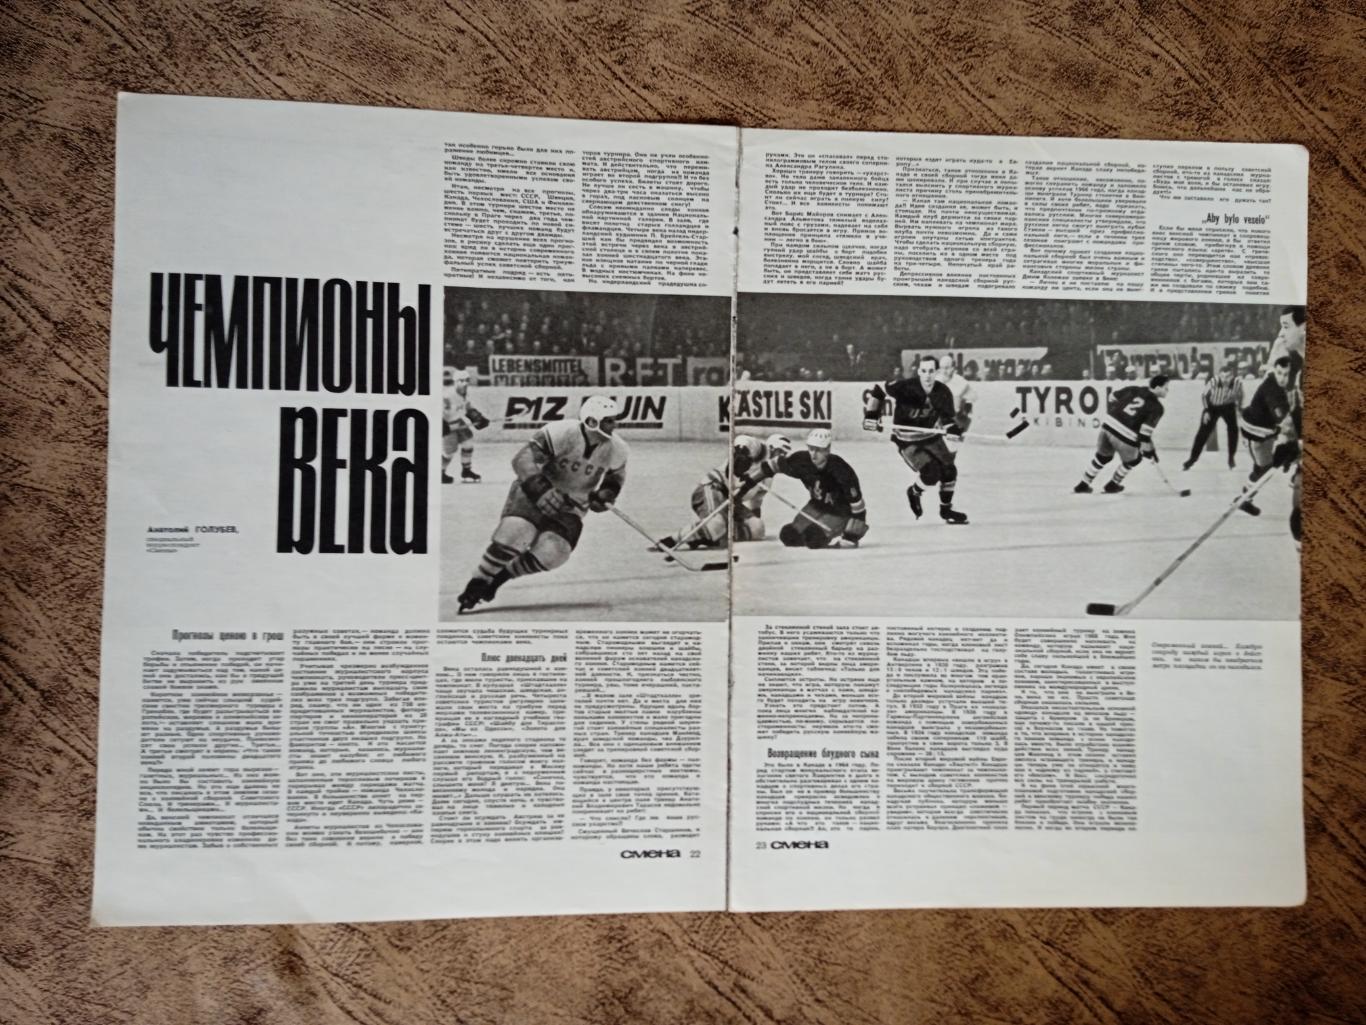 Статья.Фото.Хоккей.Чемпионы века (ЧМ 1967.Вена).Журнал Смена 1967 г.